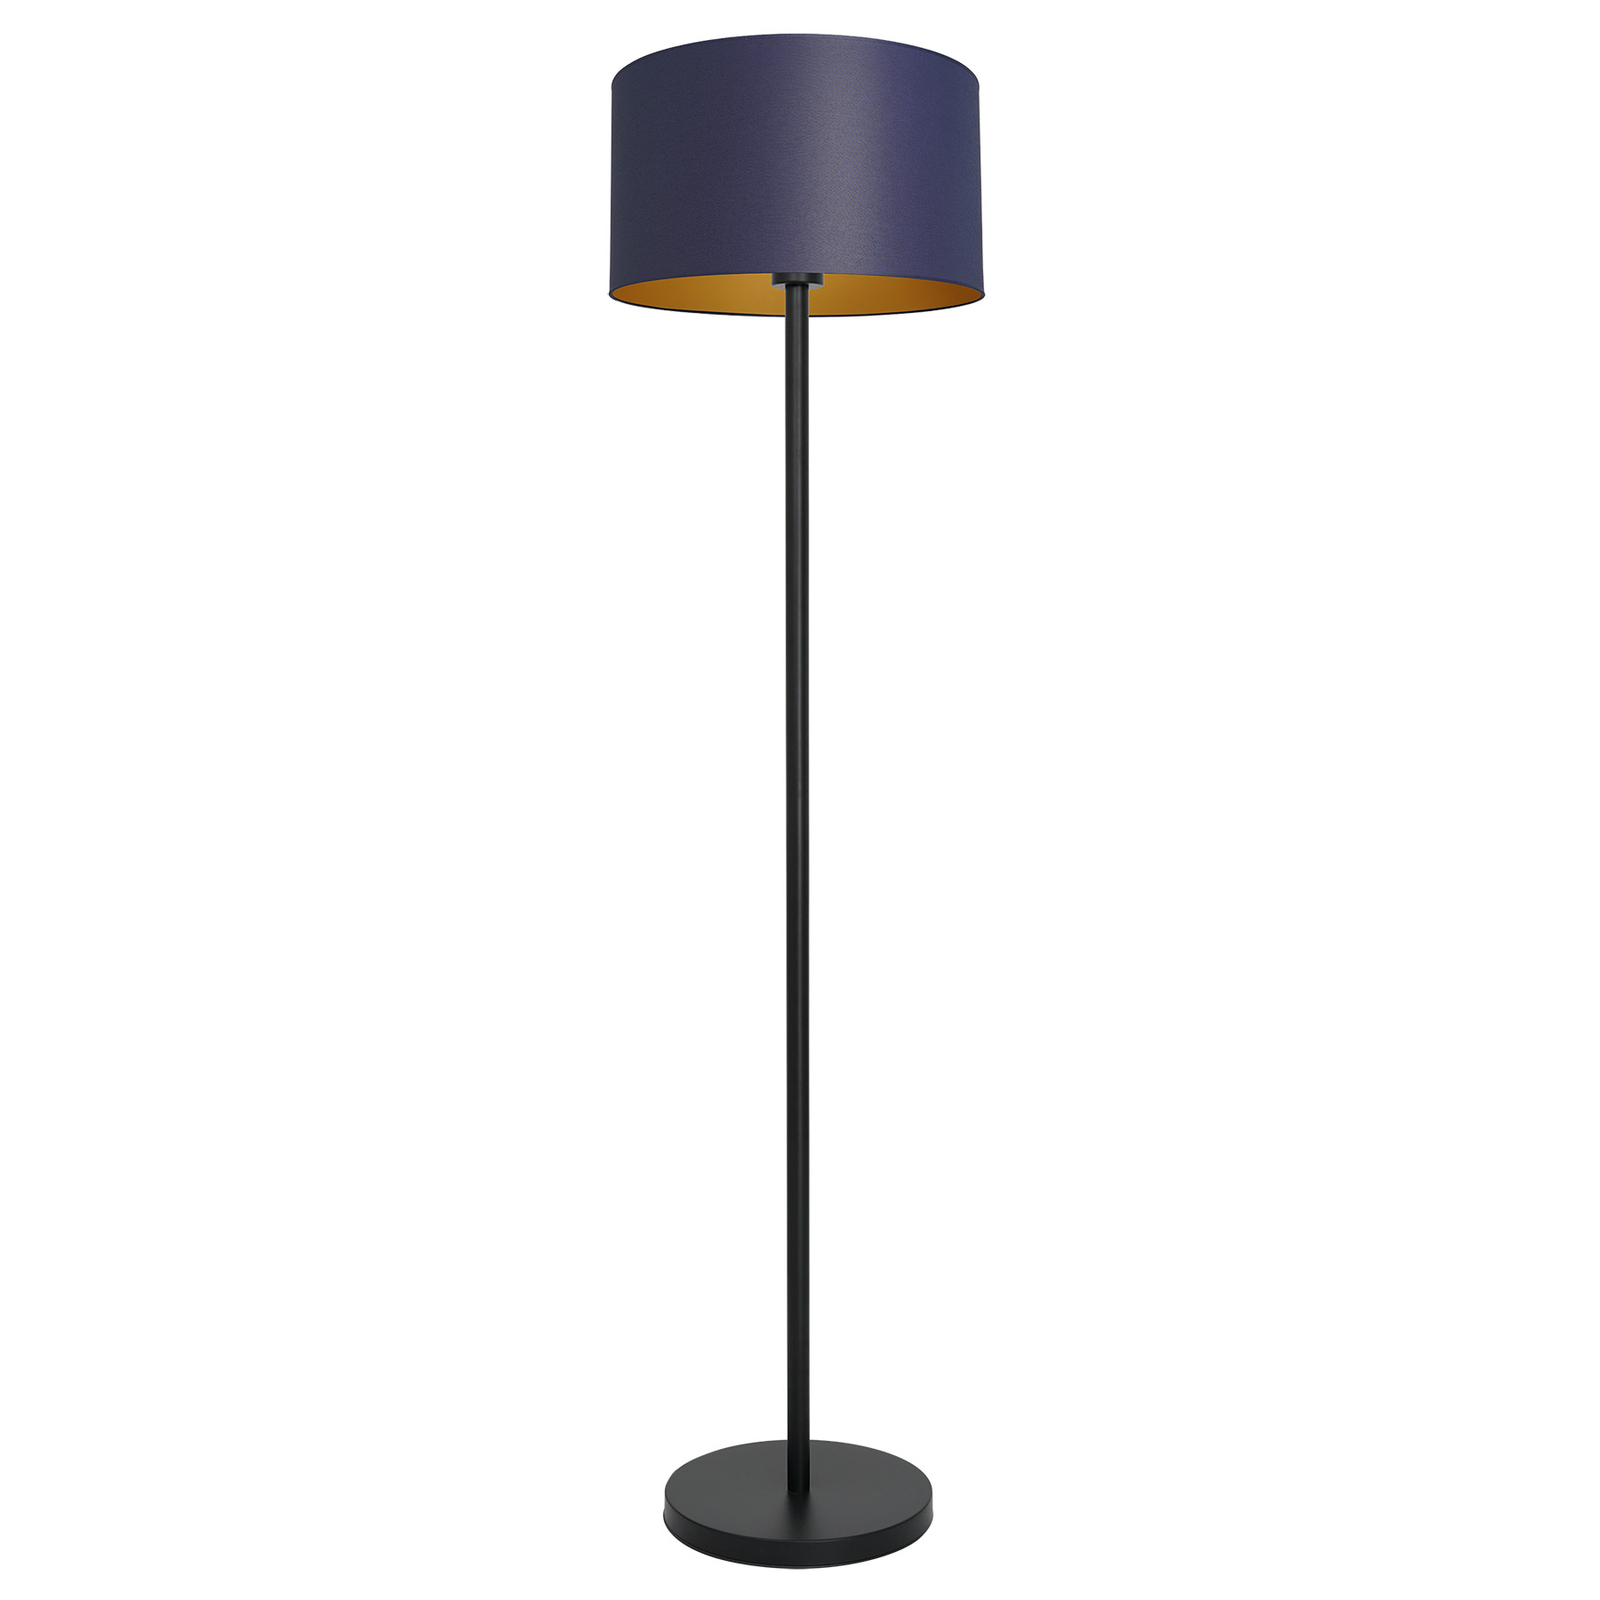 Lampa stojąca Soho cylinder prosta niebieska/złota